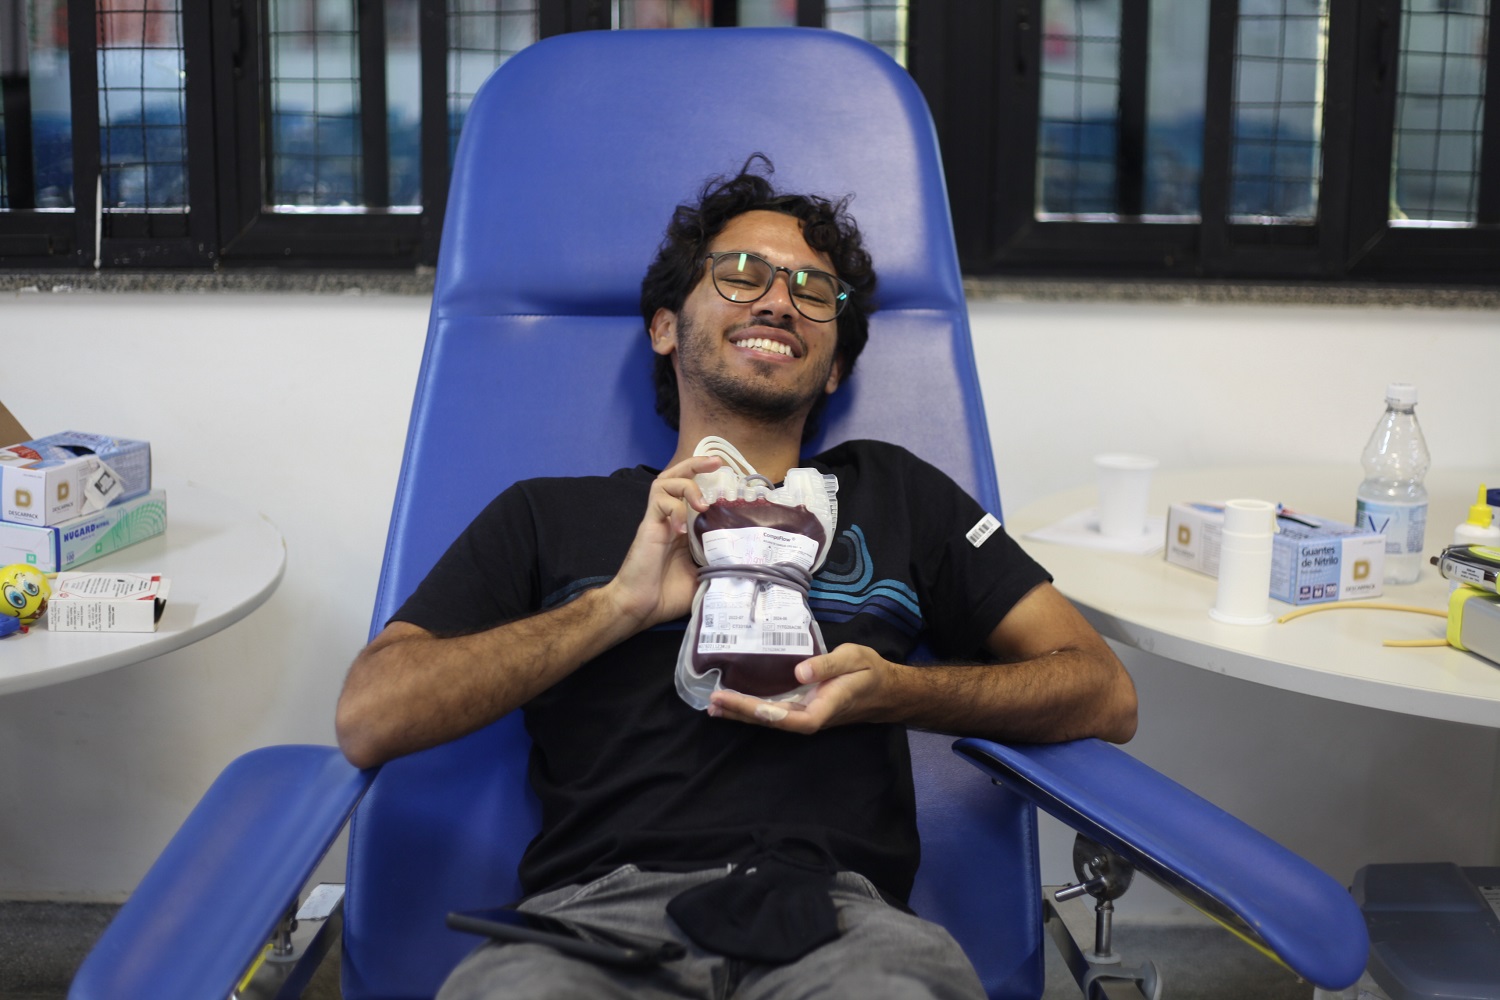 Discente de Medicina, Gabriel Santiago acredita que doação de sangue é um gesto simples que pode ajudar muitas vidas